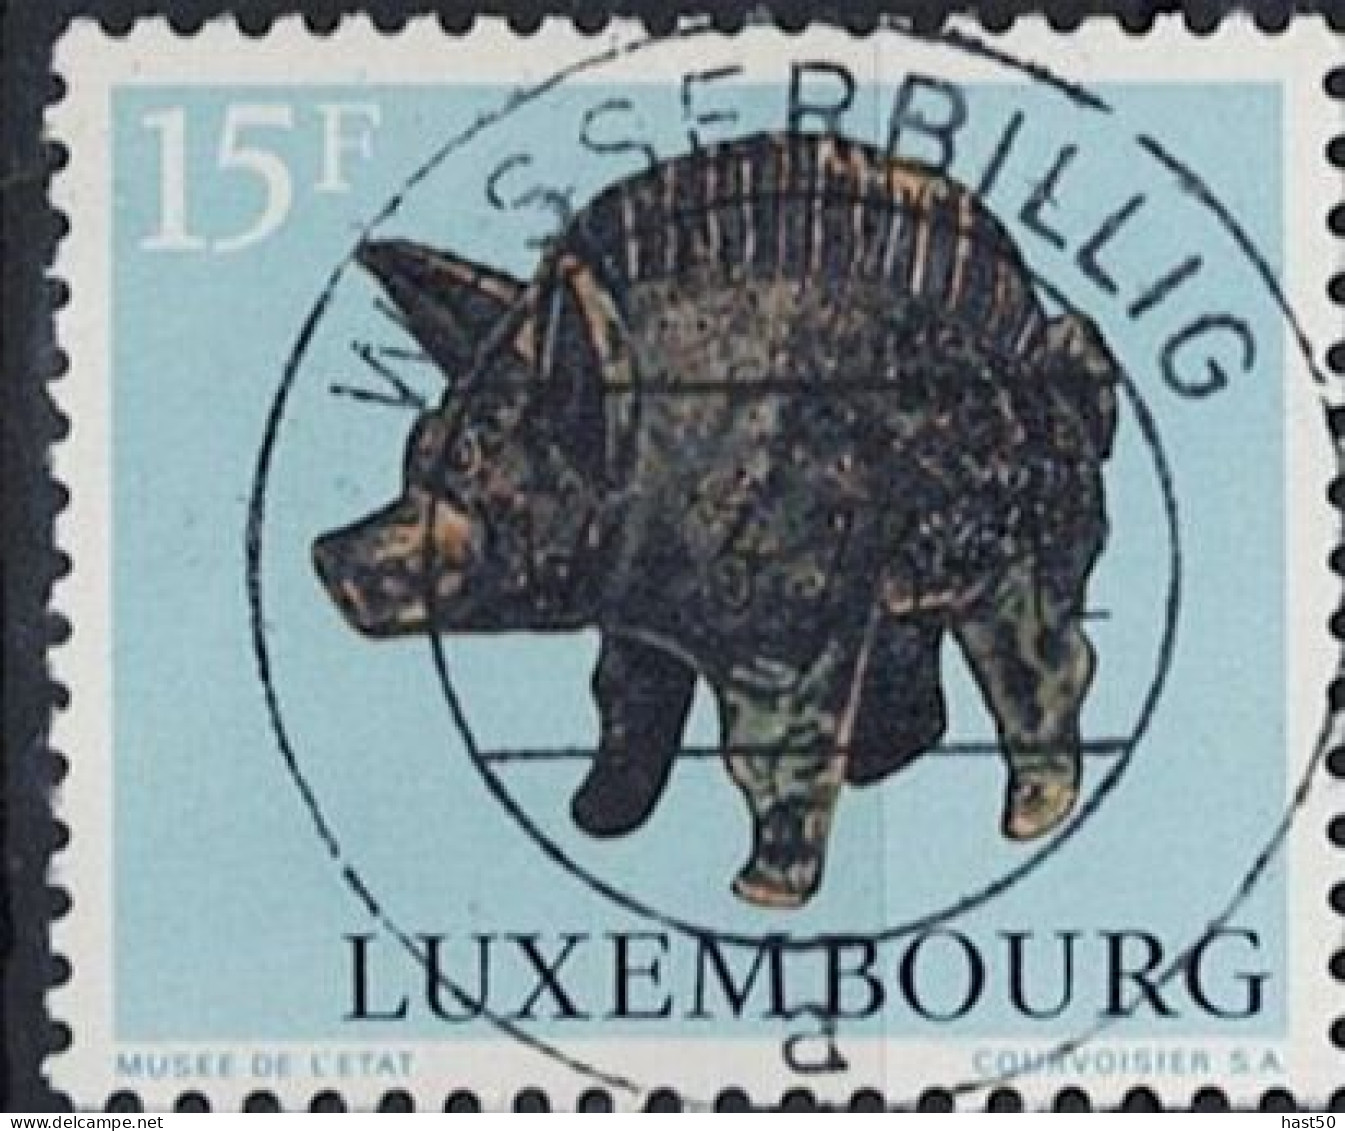 Luxemburg - Keltische Und Gallorömische Tierdarstellungen (MiNr: 861) 1973 - Gest Used Obl - Gebraucht